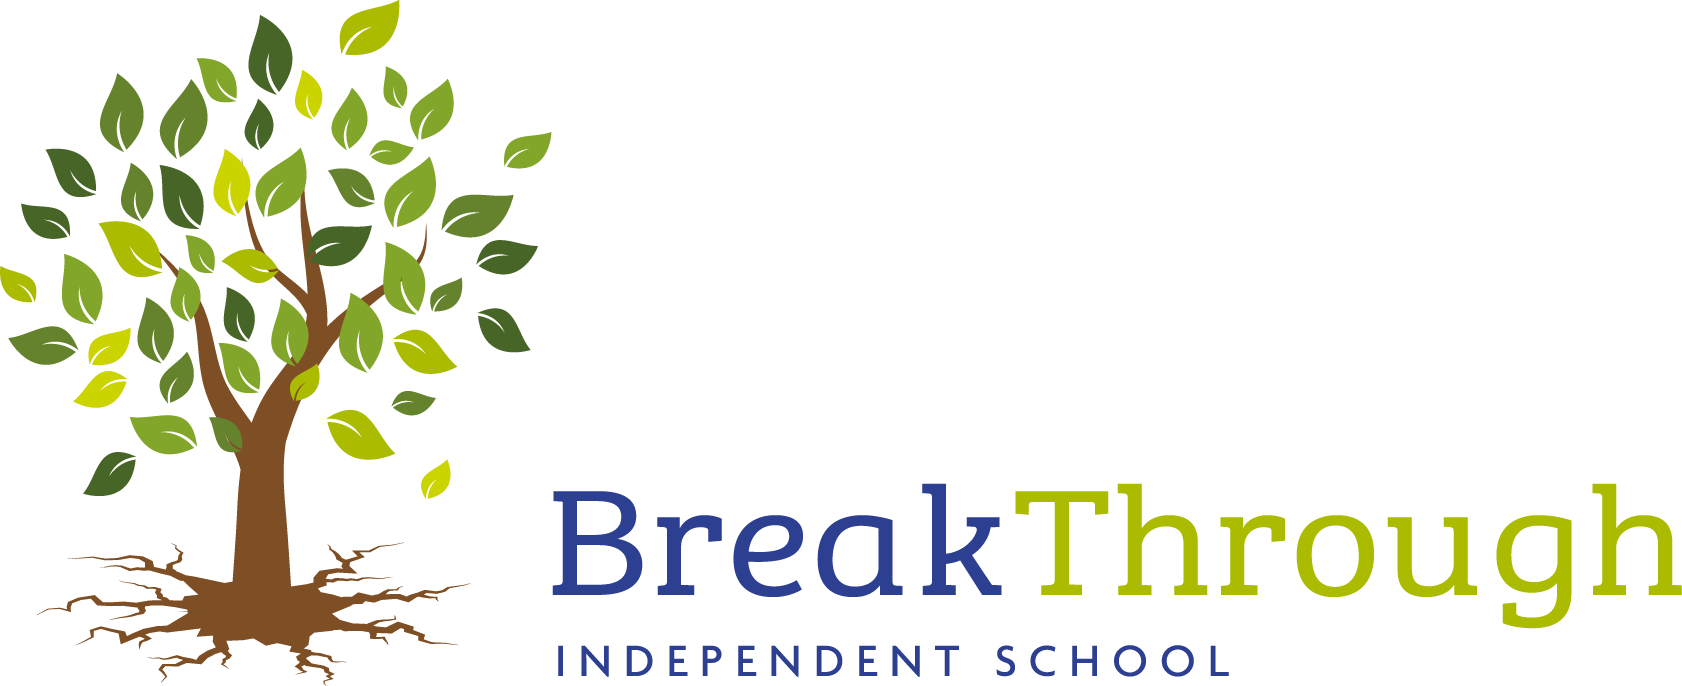 Breakthough School